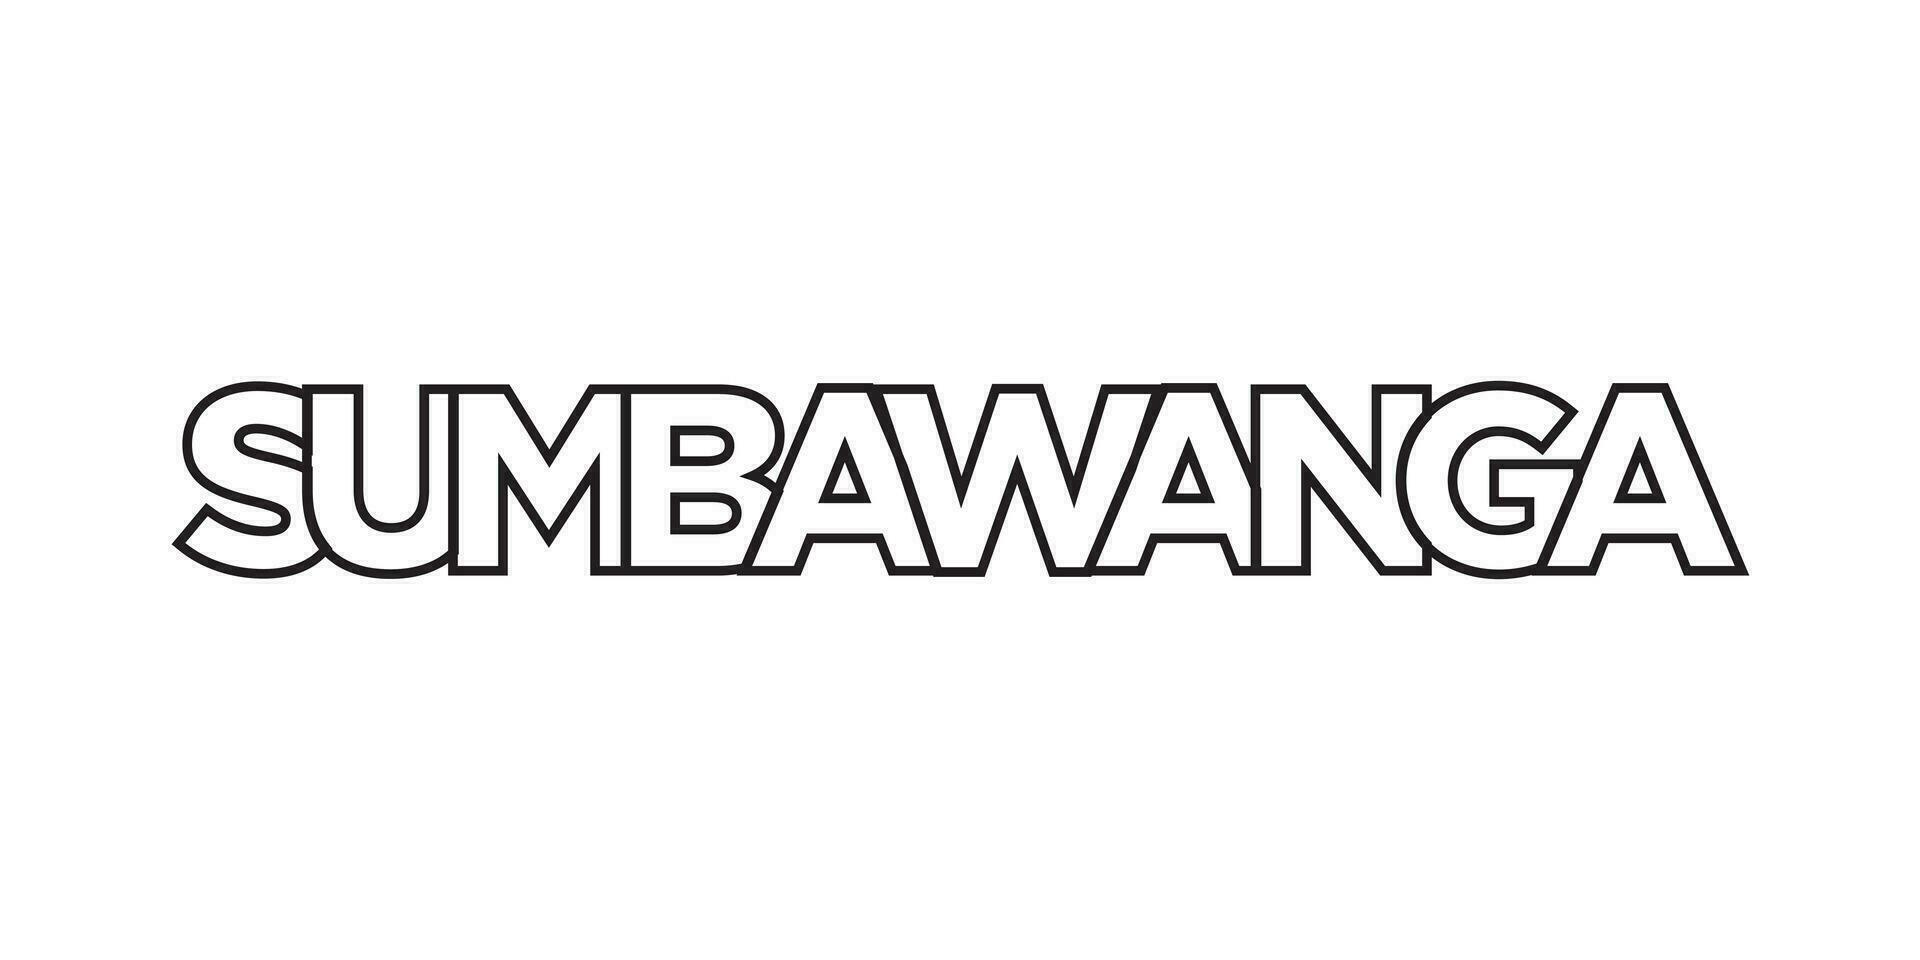 sumbawanga in de Tanzania embleem. de ontwerp Kenmerken een meetkundig stijl, vector illustratie met stoutmoedig typografie in een modern lettertype. de grafisch leuze belettering.